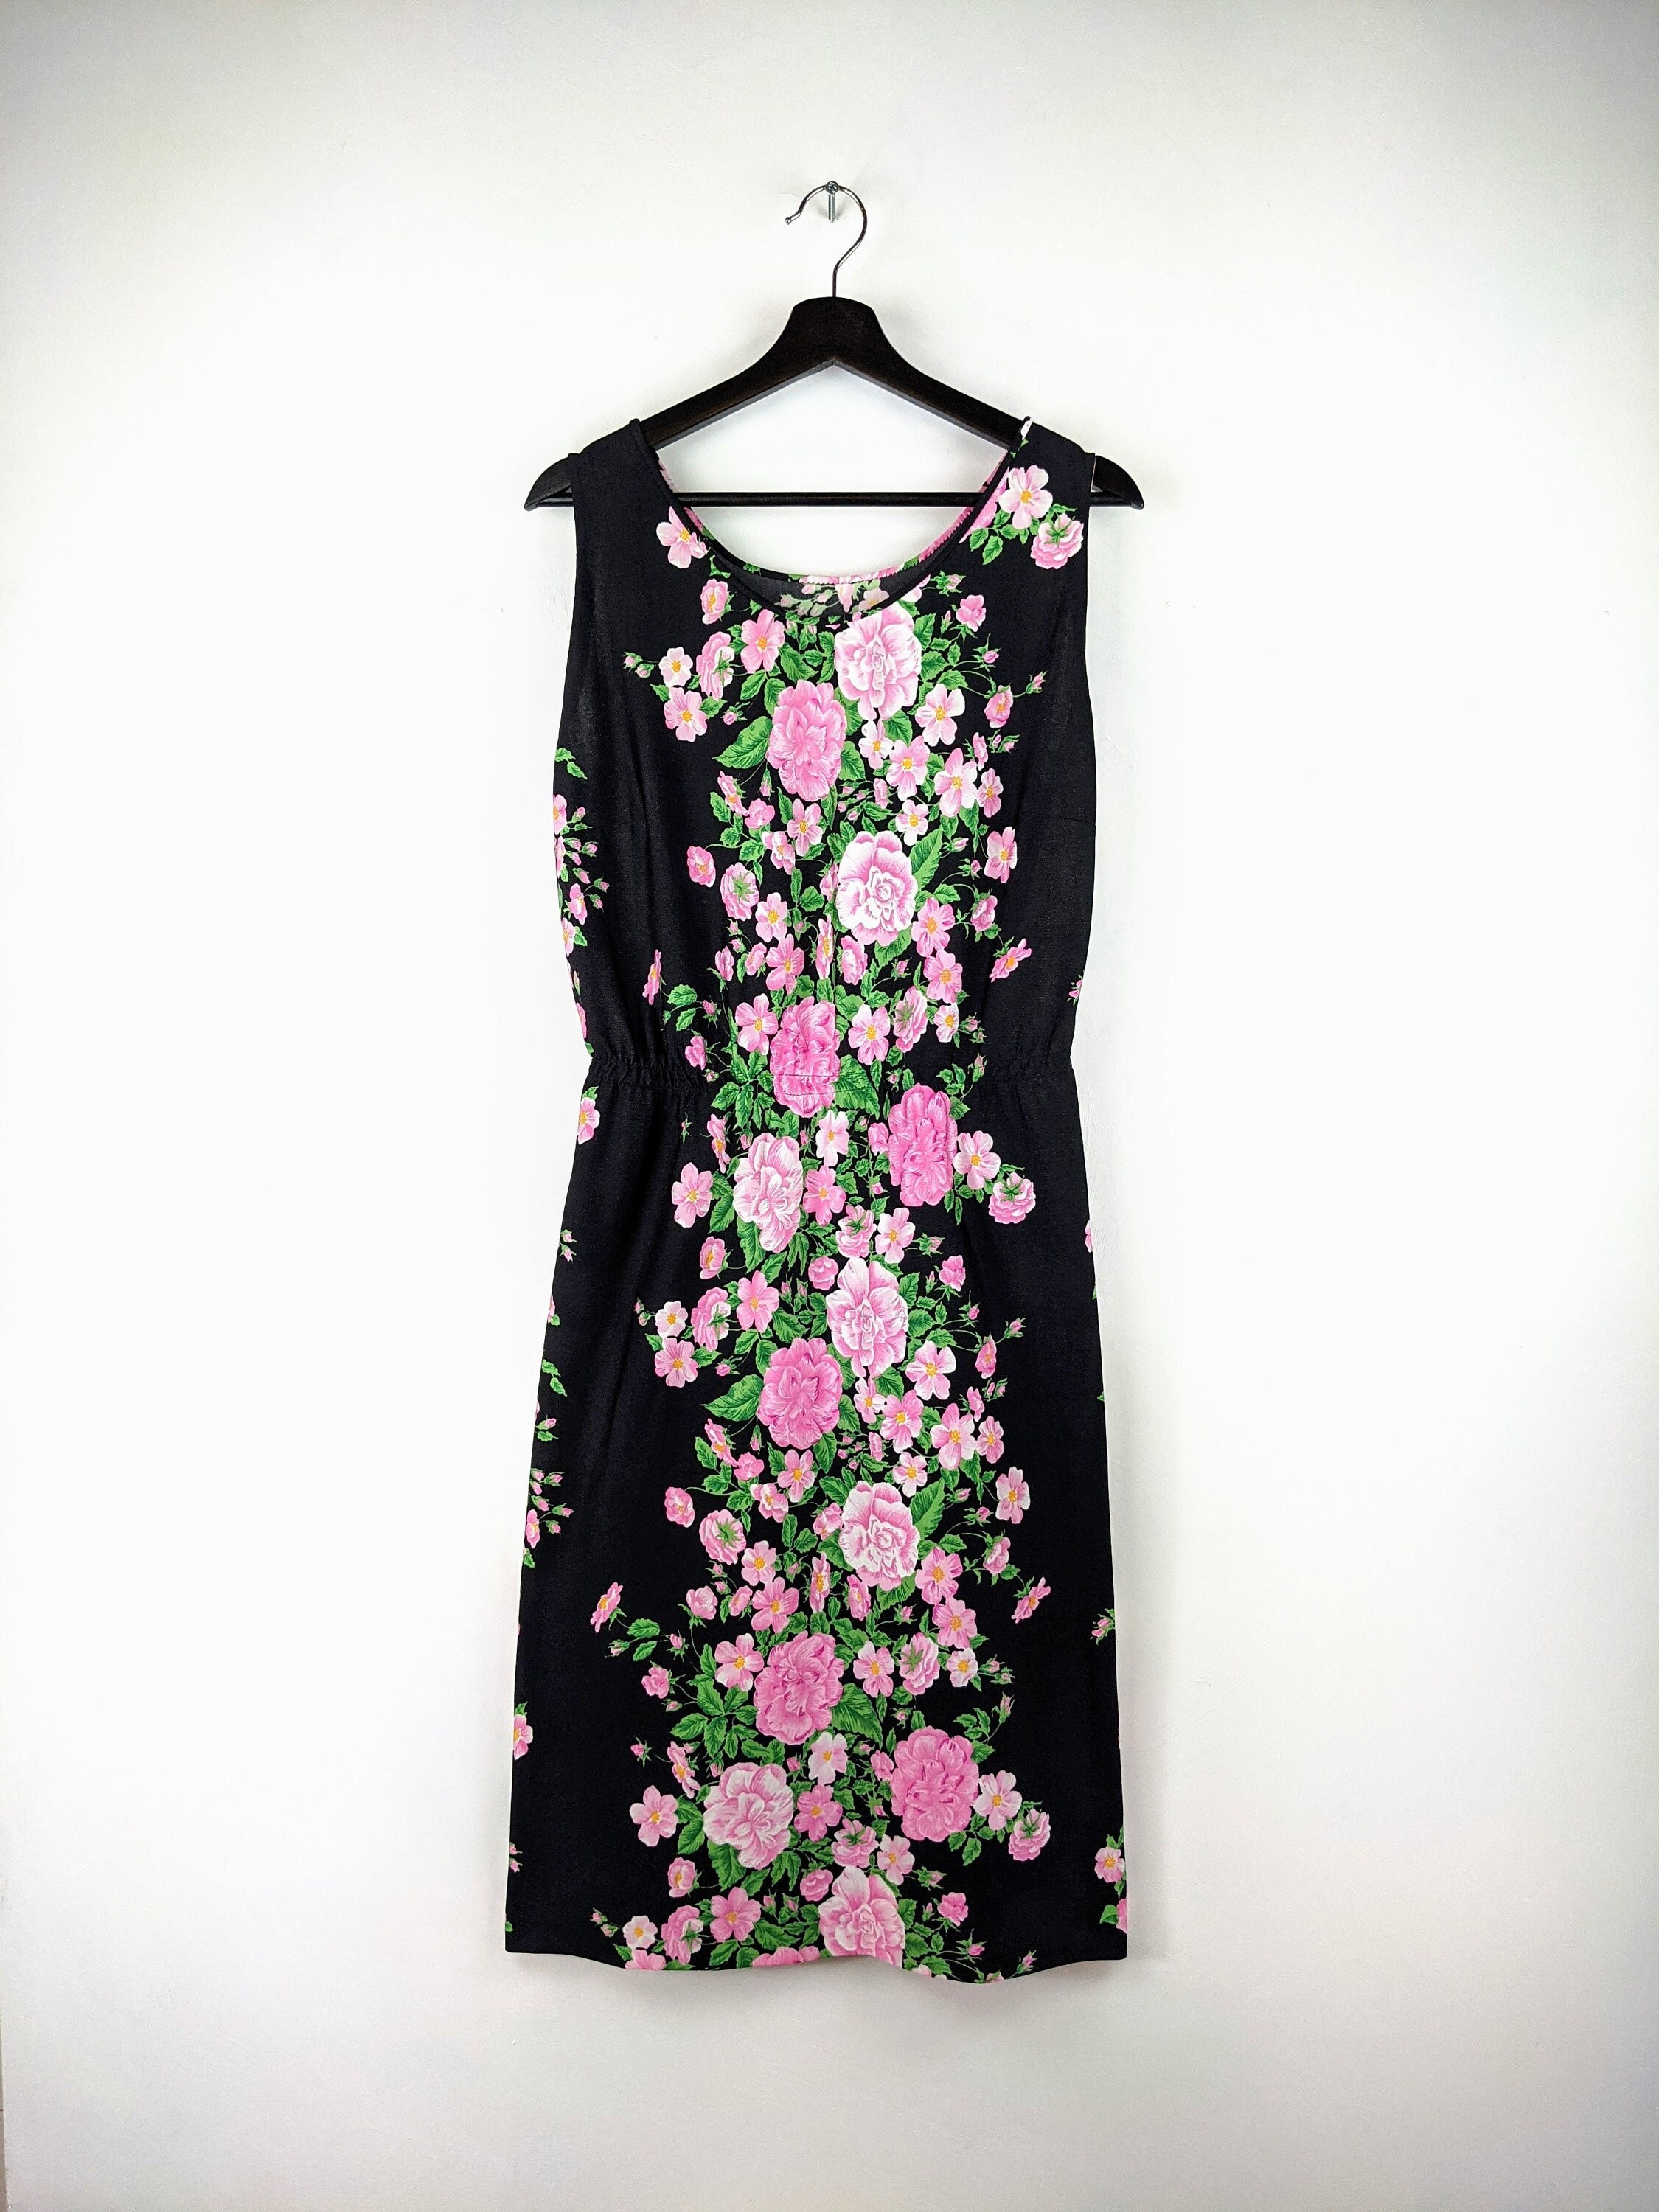 Vintage Floral Pattern Dress Size Large